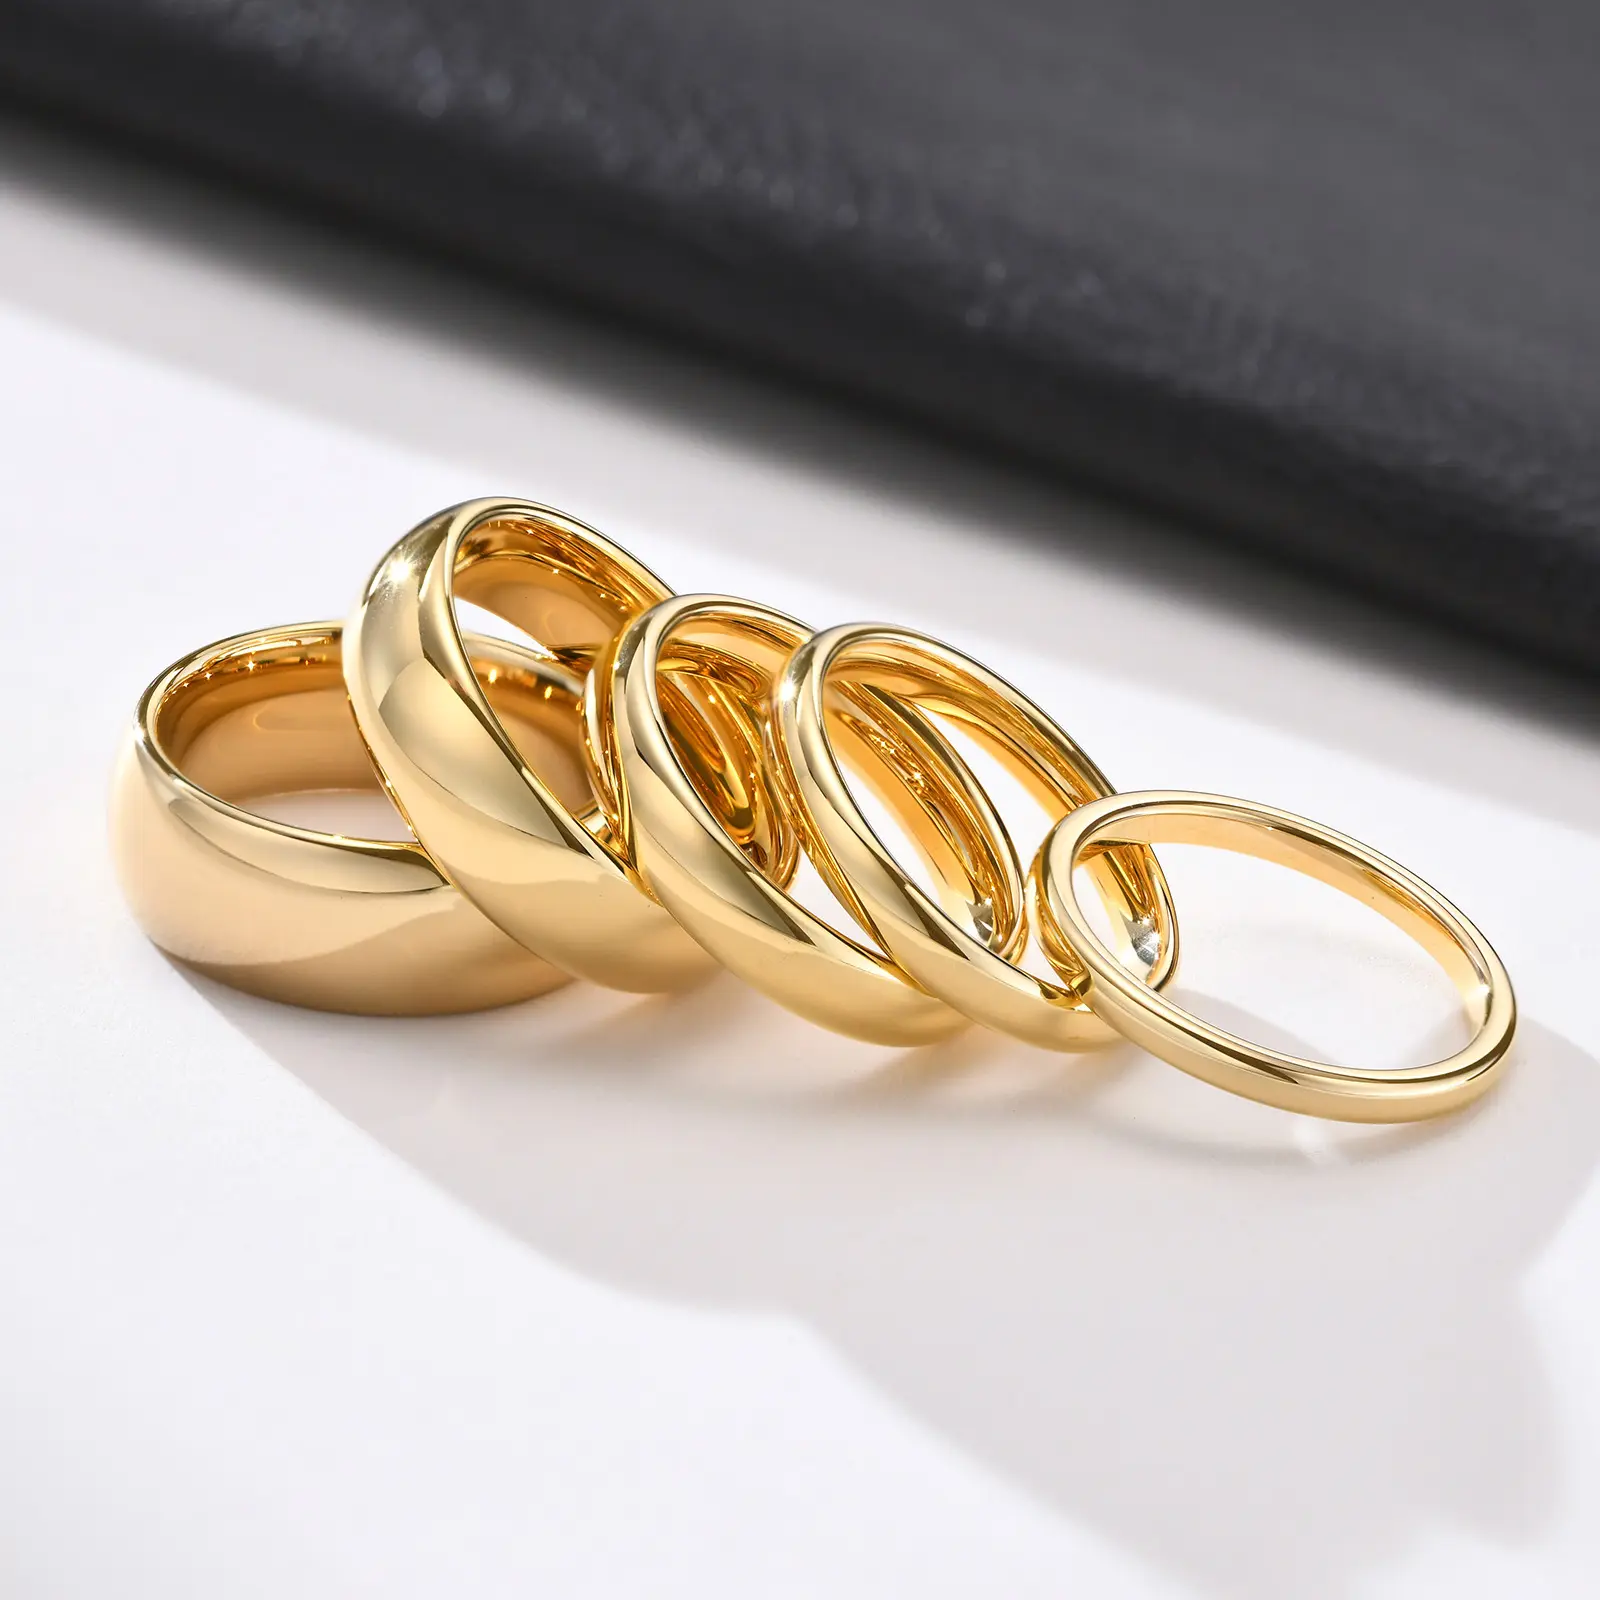 INS anelli in acciaio al tungsteno lucido 18 carati IP placcatura in oro gioielli donna fedi nuziali oro 18 carati coppia anello misura